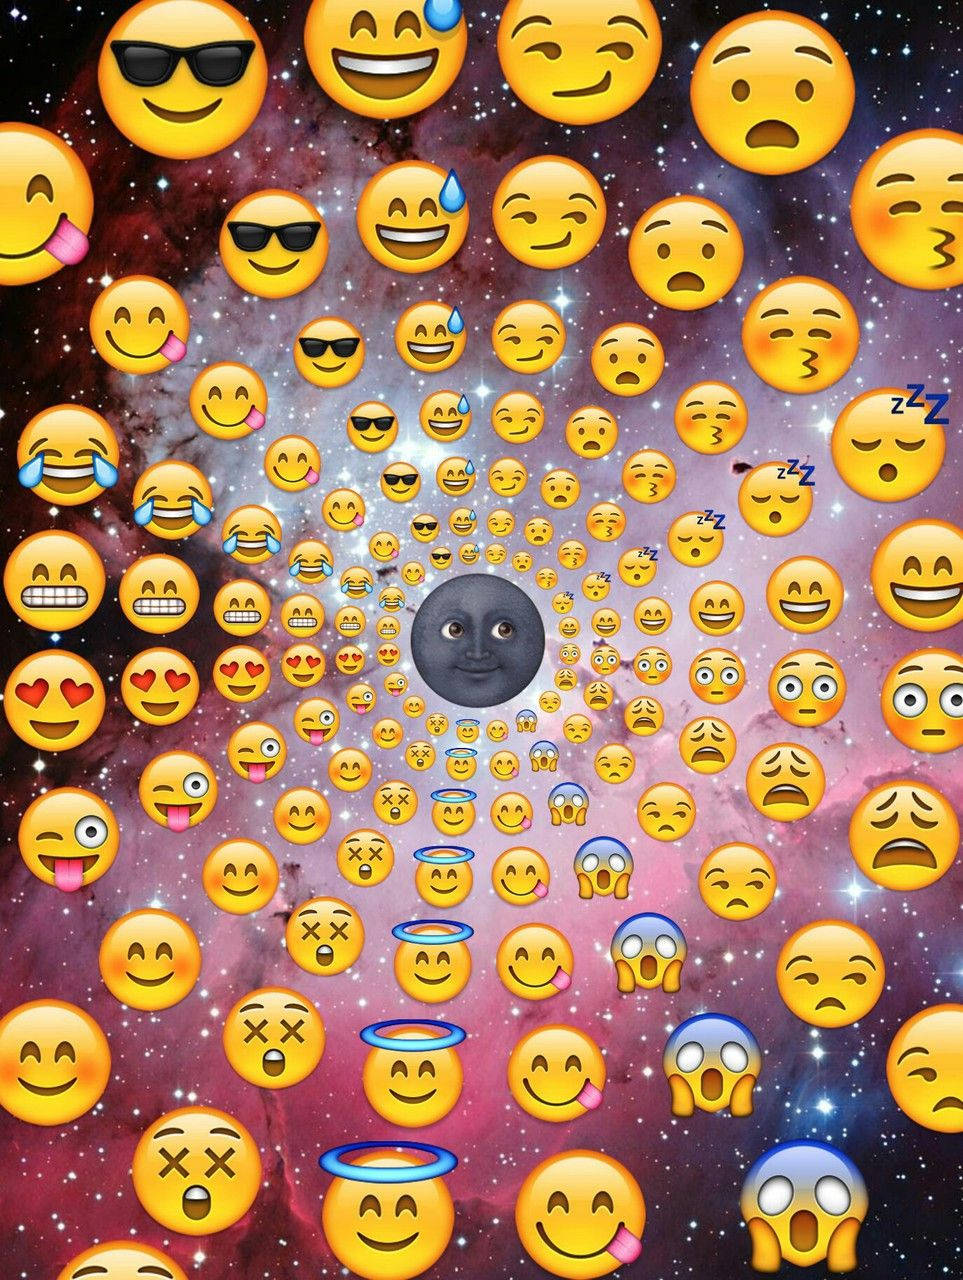 Sun Rays Emoji In Beautiful Galaxy Background